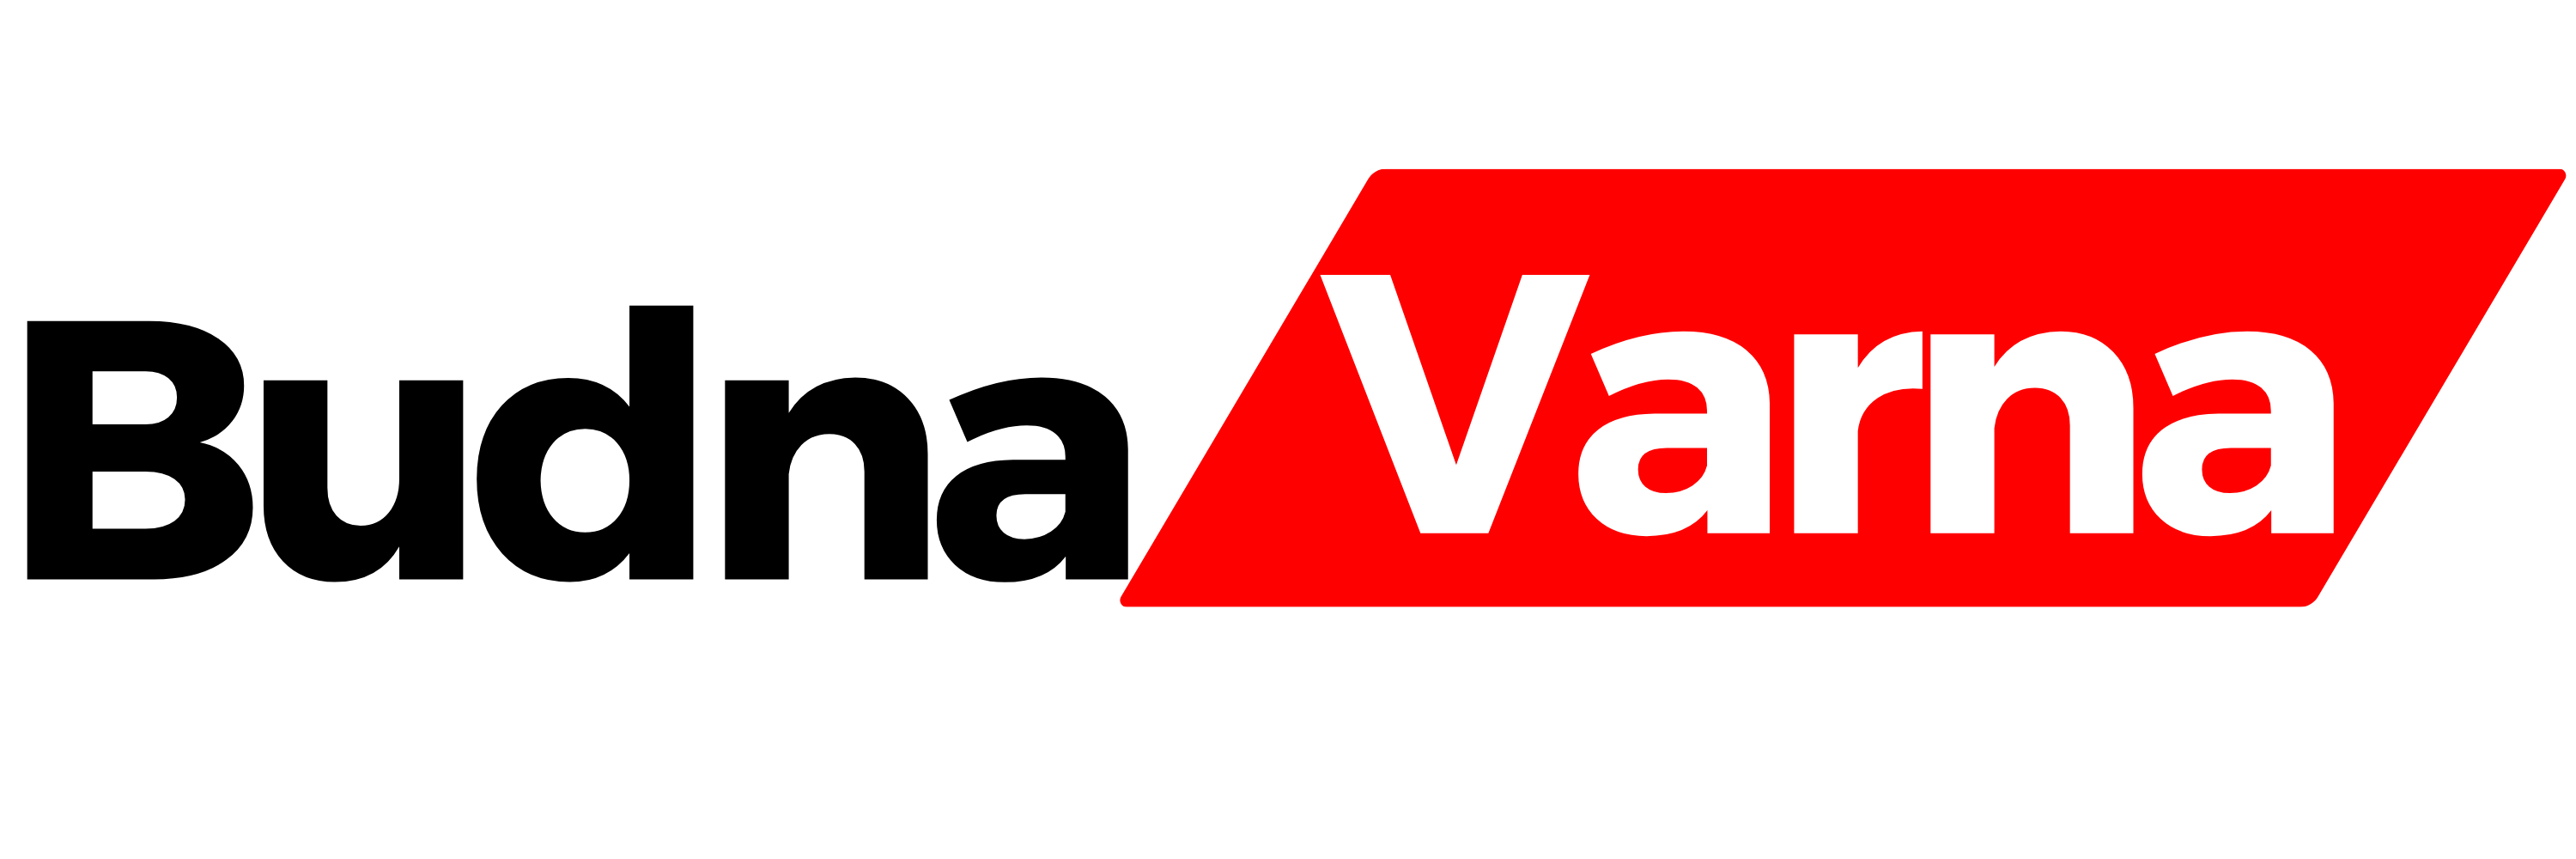 Budna Varna logo